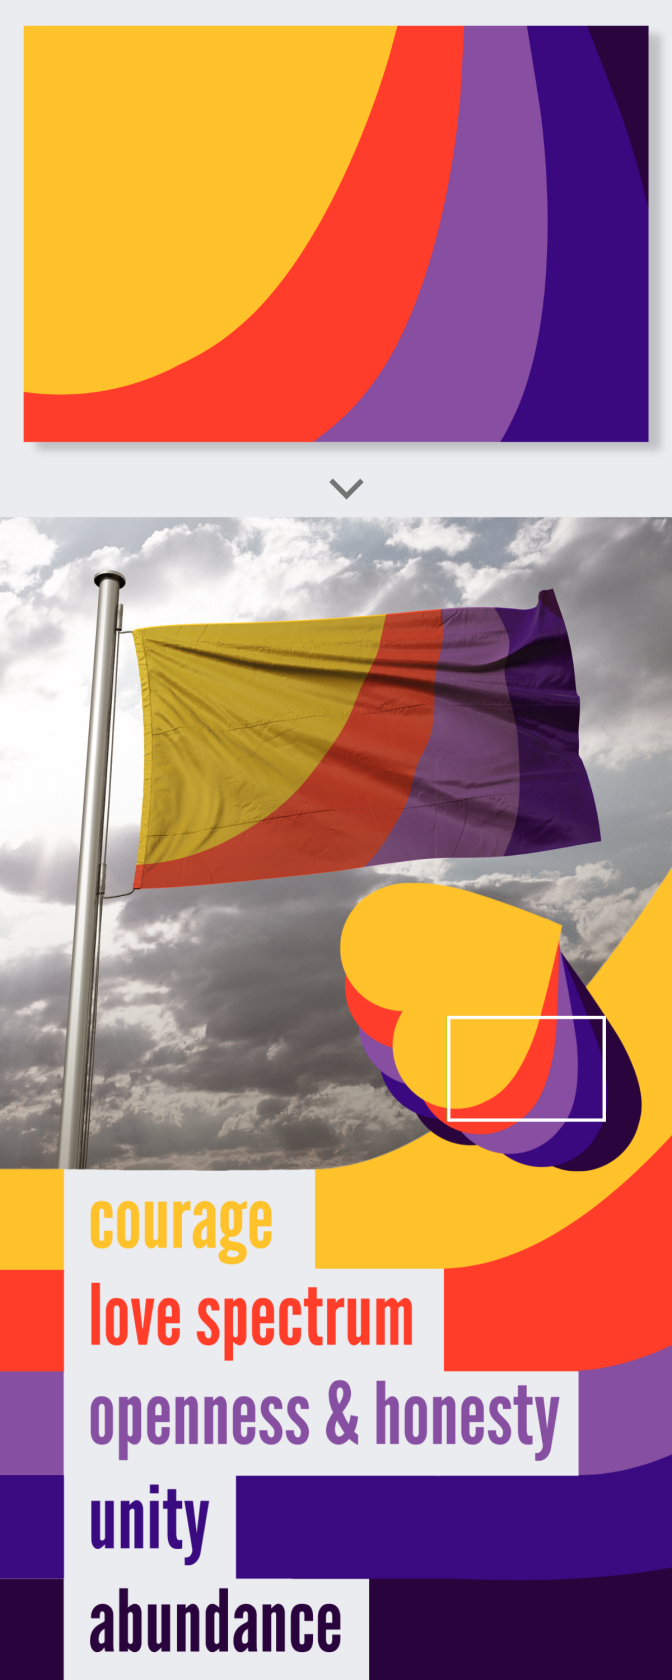 Eine Flagge mit Farbfeldern in einer geschwungenen Form. Die Felder sind, von links nach rechts, gelb, rot, helllila und dunkellila.